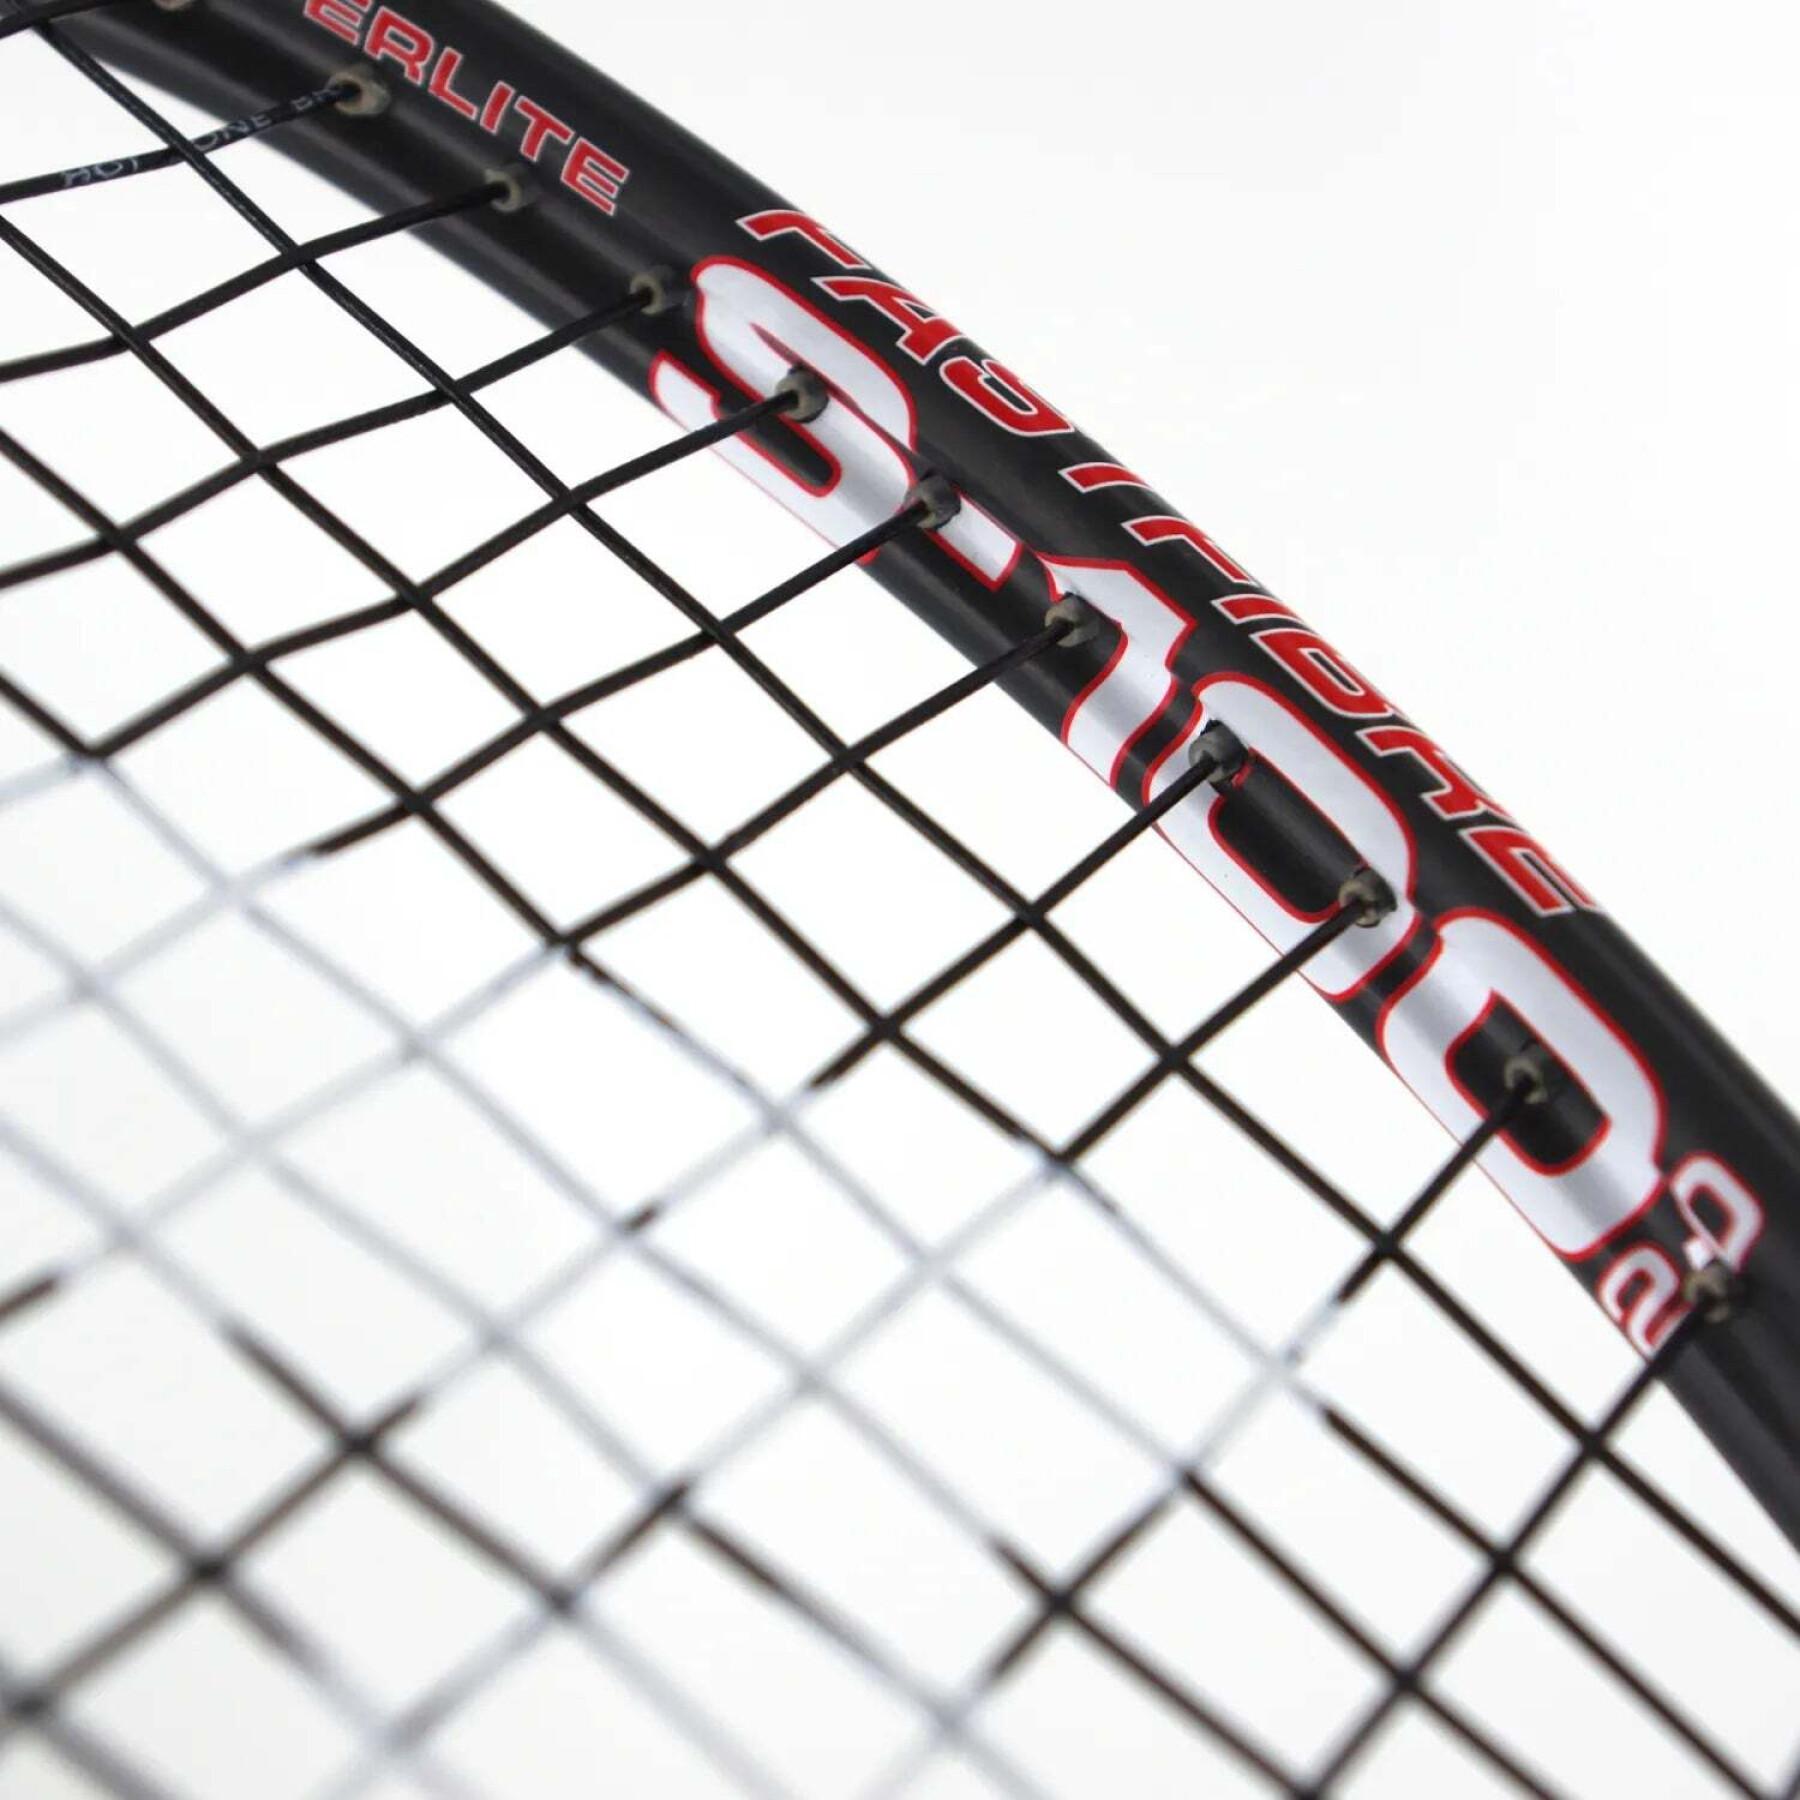 Squash racket Karakal S 100ff 2.0